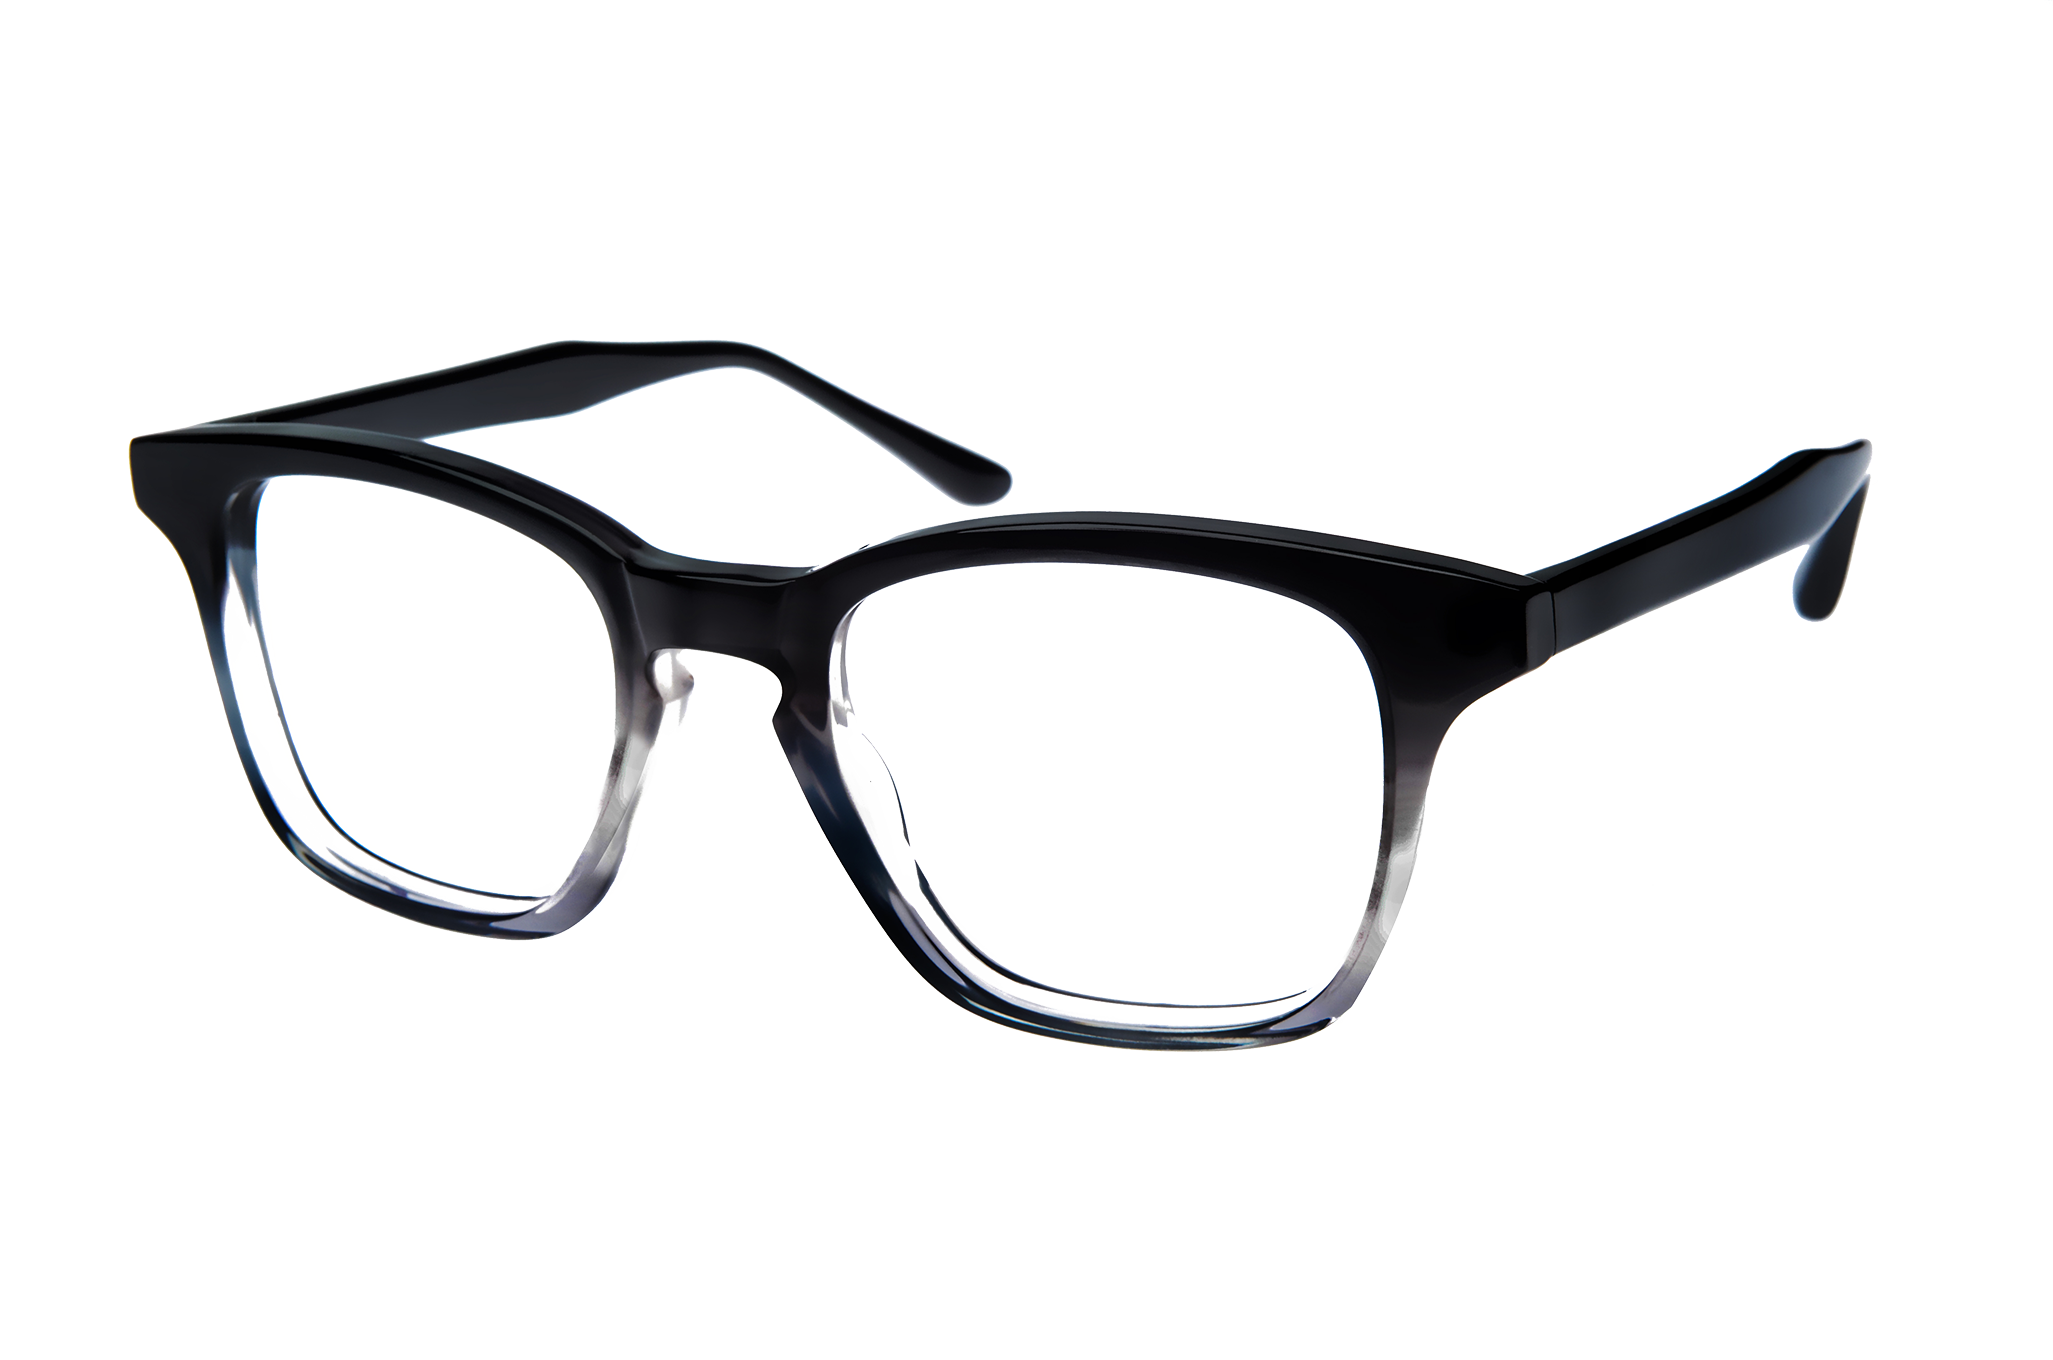 Kacamata PNG Gambar dengan latar belakang Transparan